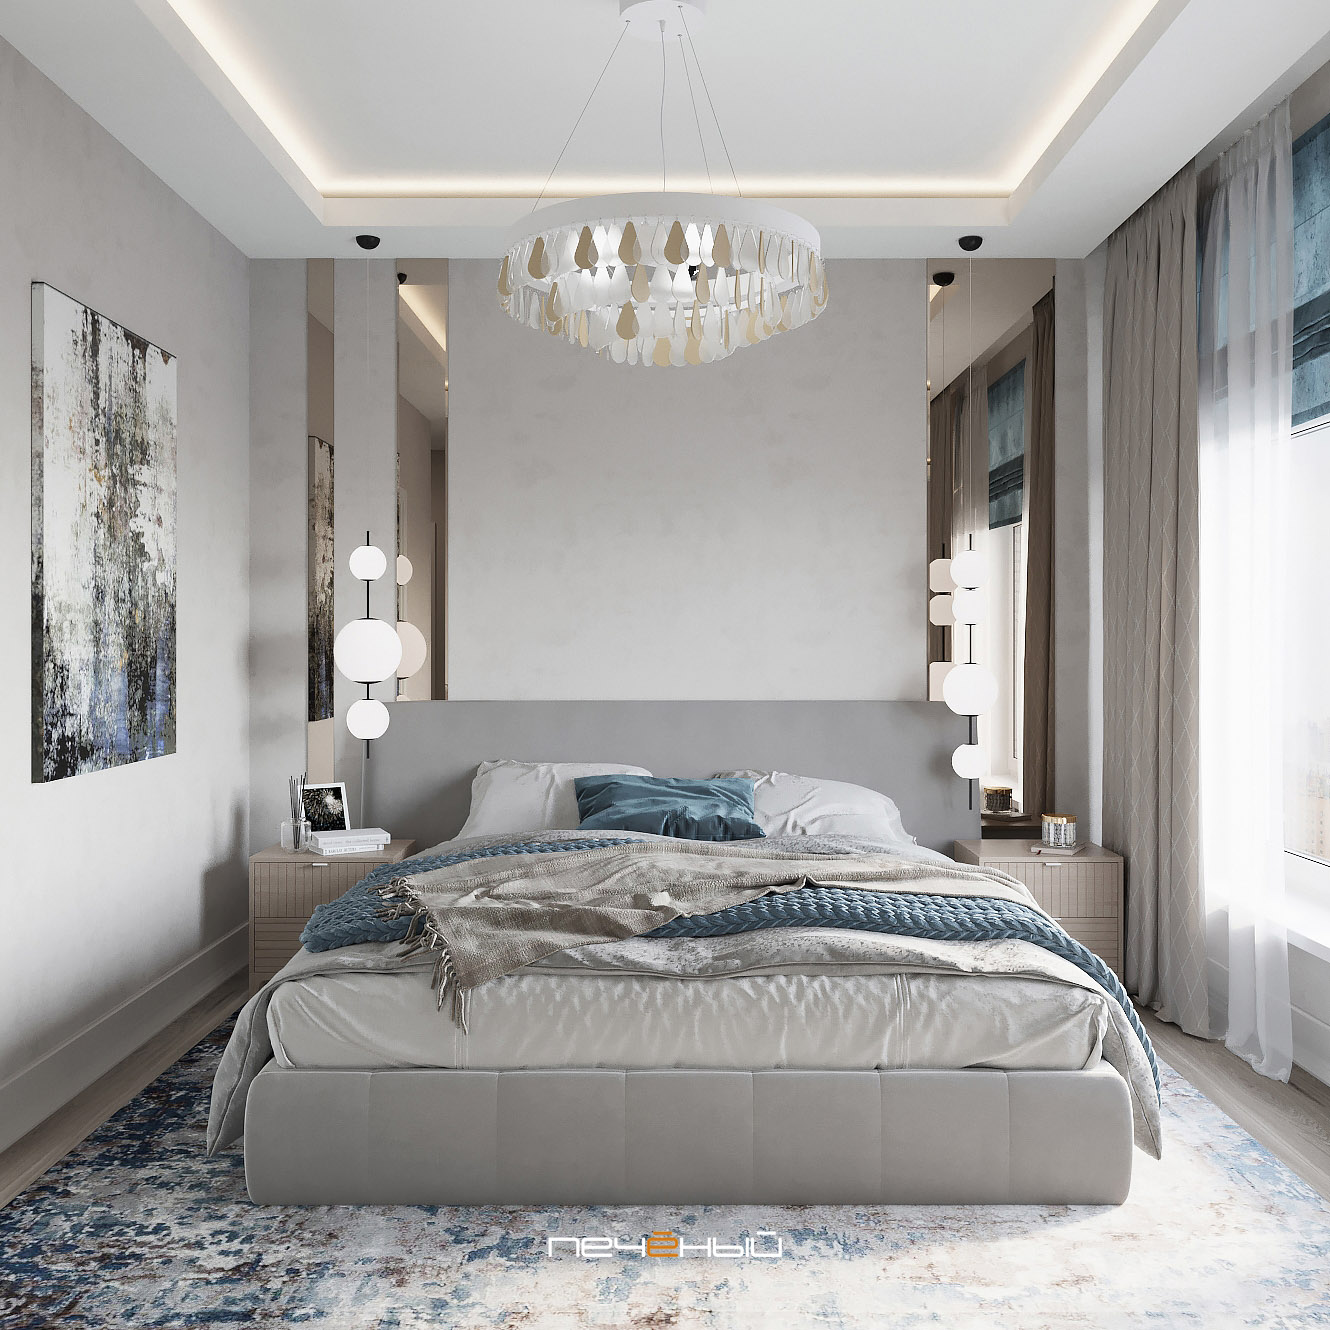 [Download 20+] 24+ Дизайн Спальни 2020 С Гардеробной Images GIF Дизайн Спальни С Угловой Гардеробной